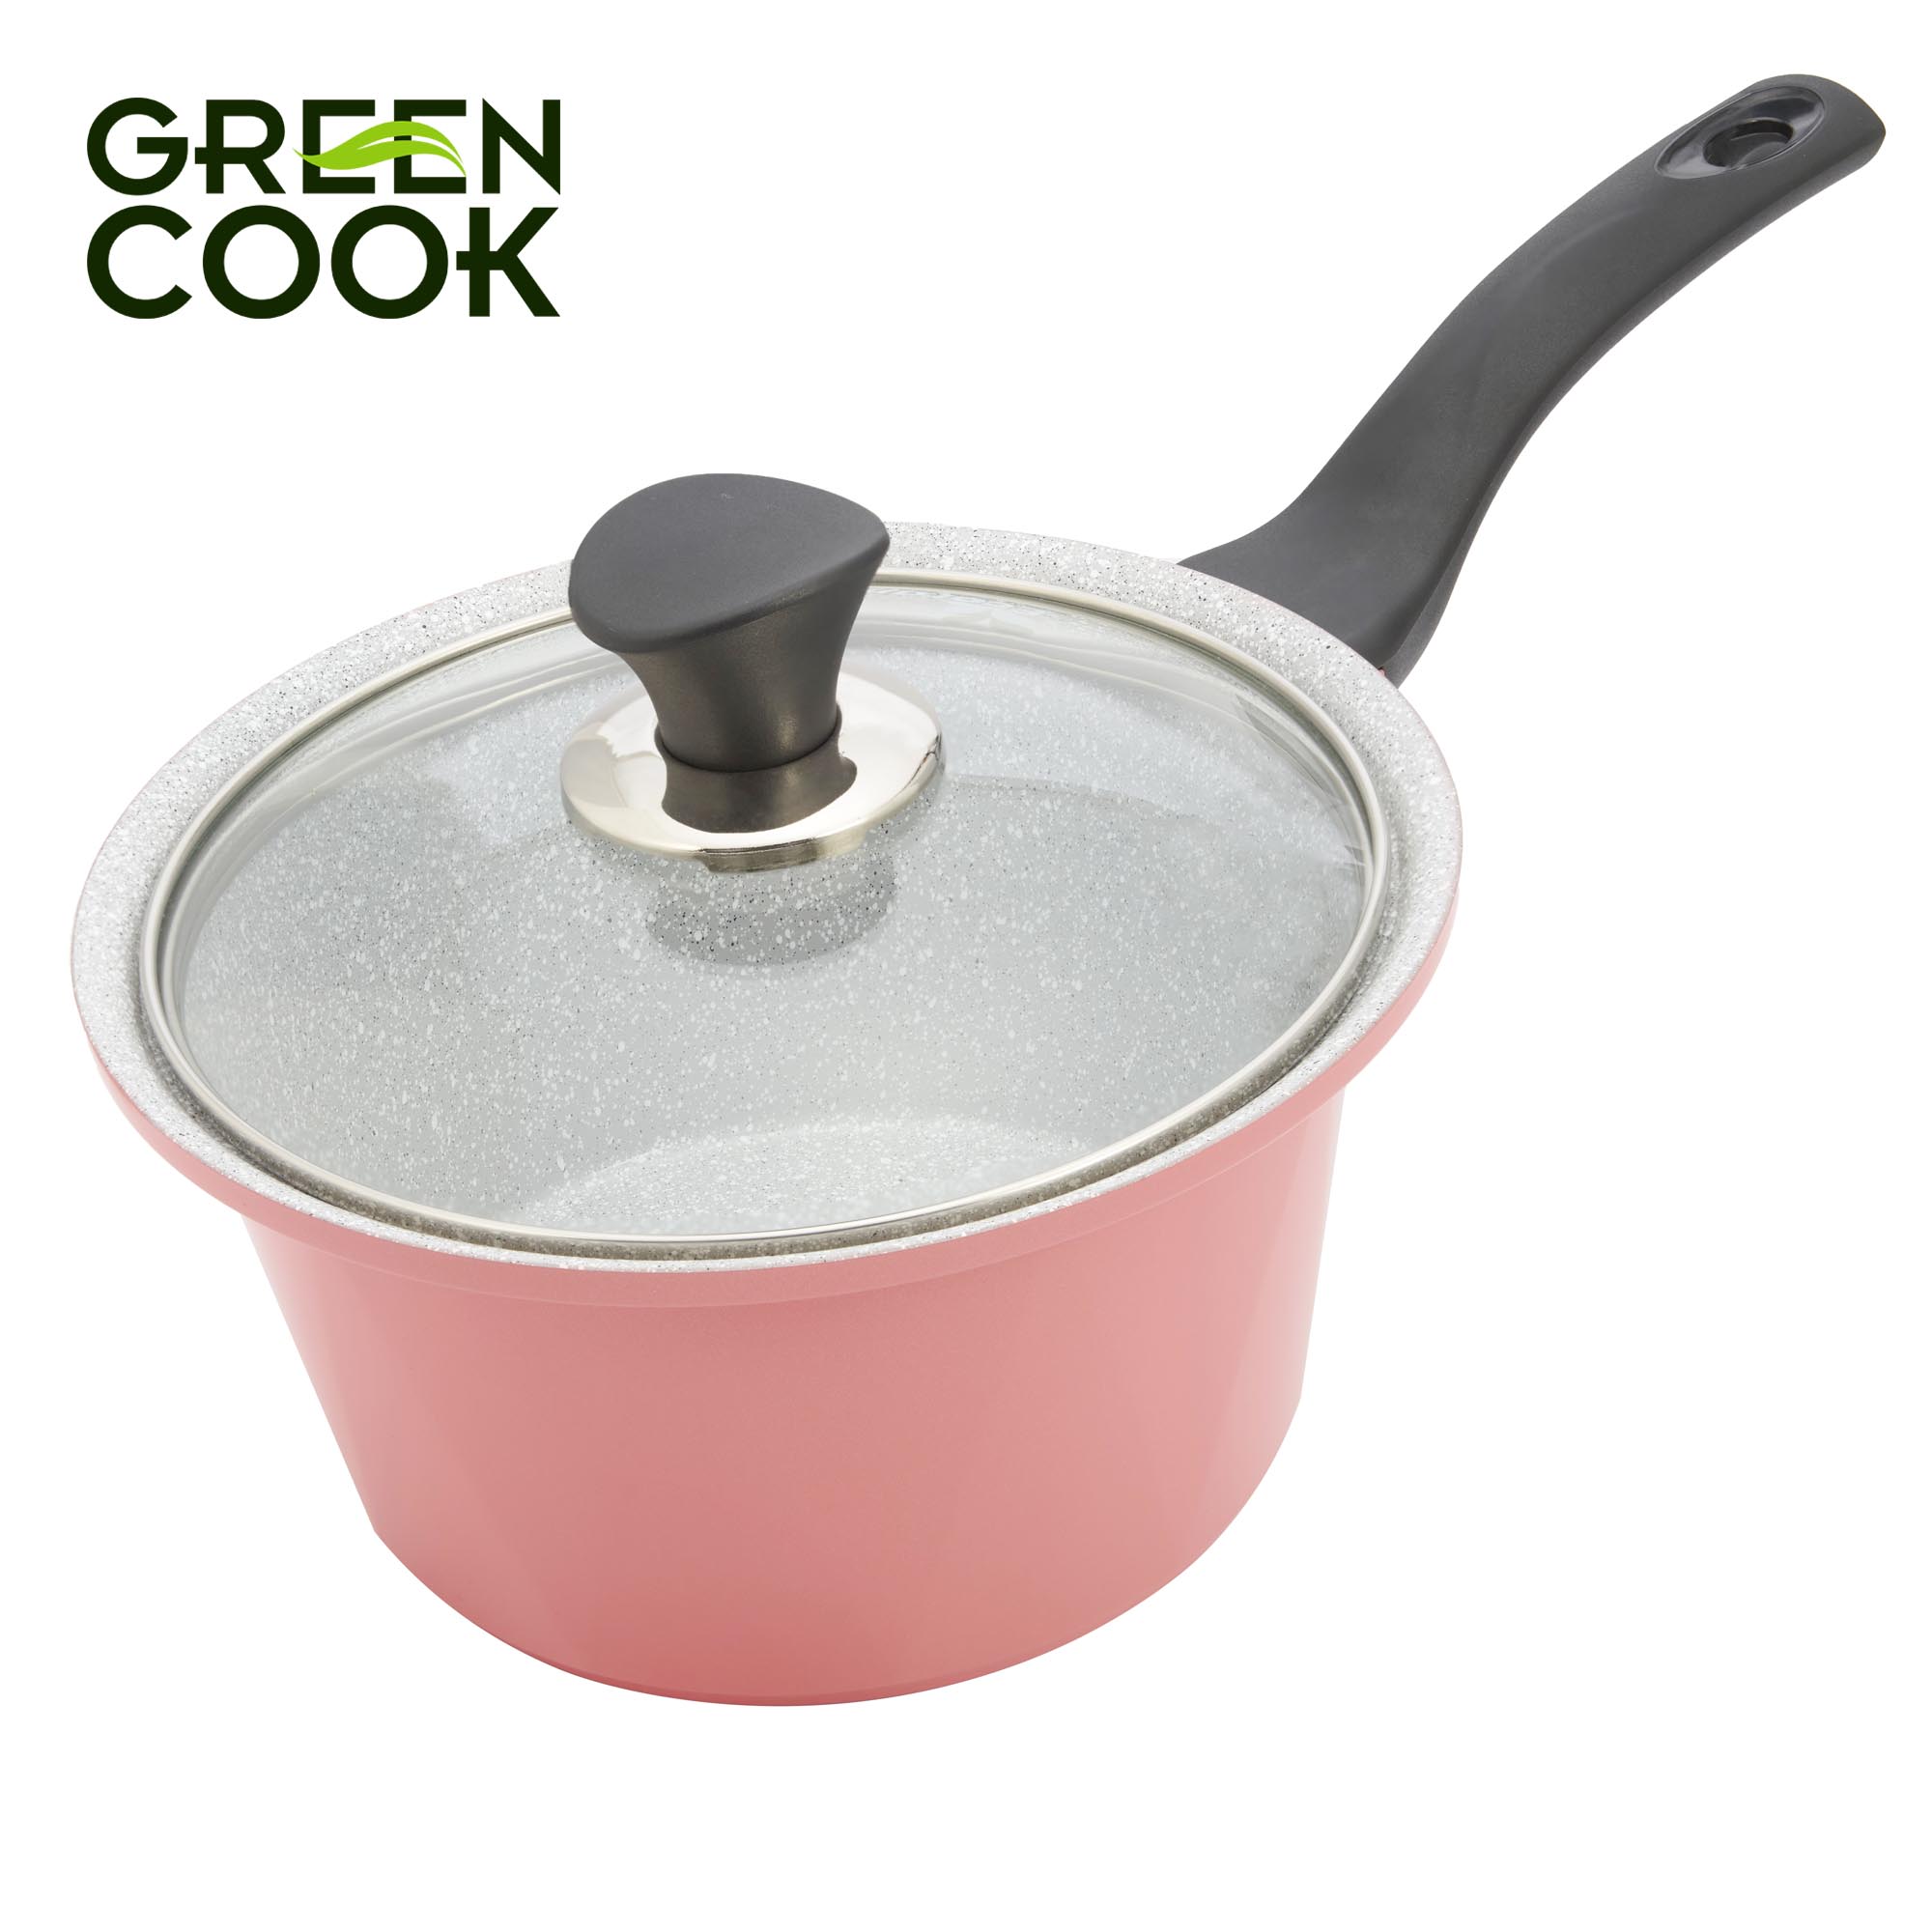 Bộ 3 nồi đúc ceramic vân đá chống dính đáy từ 18 cm, 20 cm và 24 cm Green Cook GCS02 màu hồng, dùng được tất cả các loại bếp, công nghệ Hàn Quốc sản xuất tại Việt Nam - Hàng chính hãng greencook